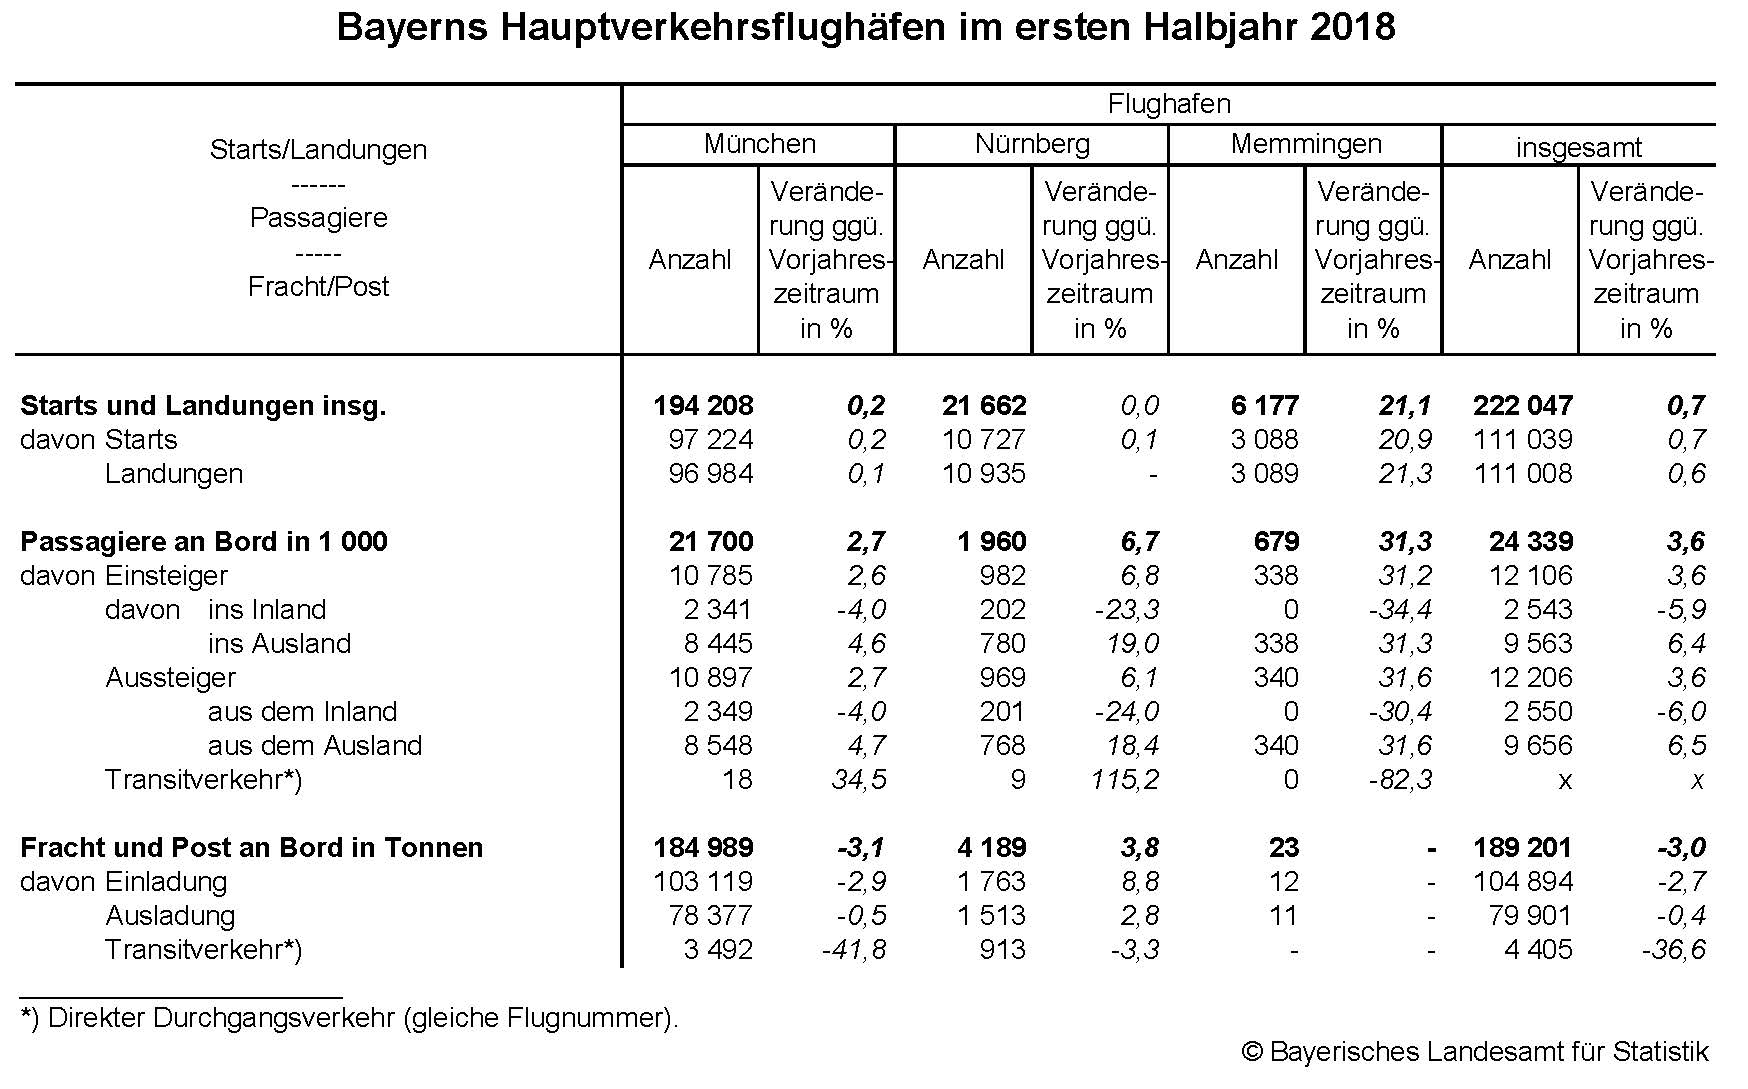 Bayerns Hauptverkehrsflughäfen im ersten Halbjahr 2018